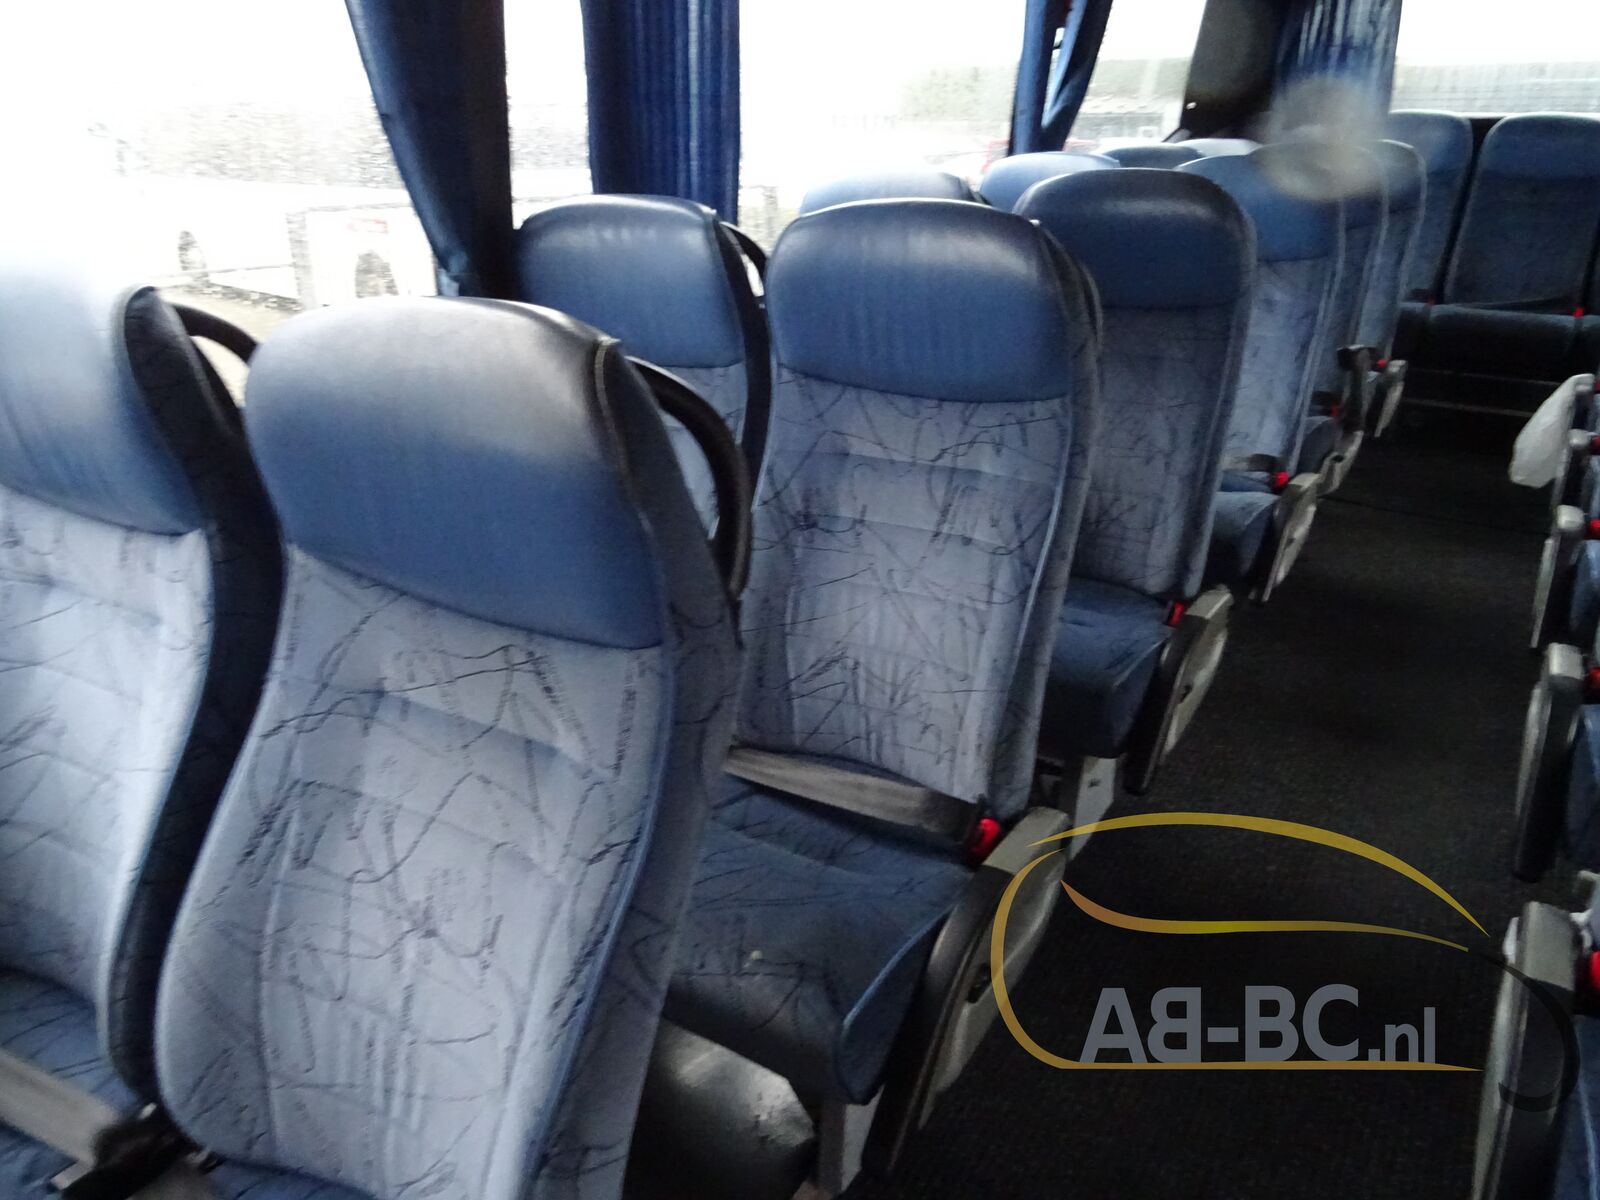 coach-bus-VDL-BOVA-Futura-61-Seats---1641294643716087254_orig_4b2eb48fc20518a1d5f5f2b2c80144b7--22010413024564861800